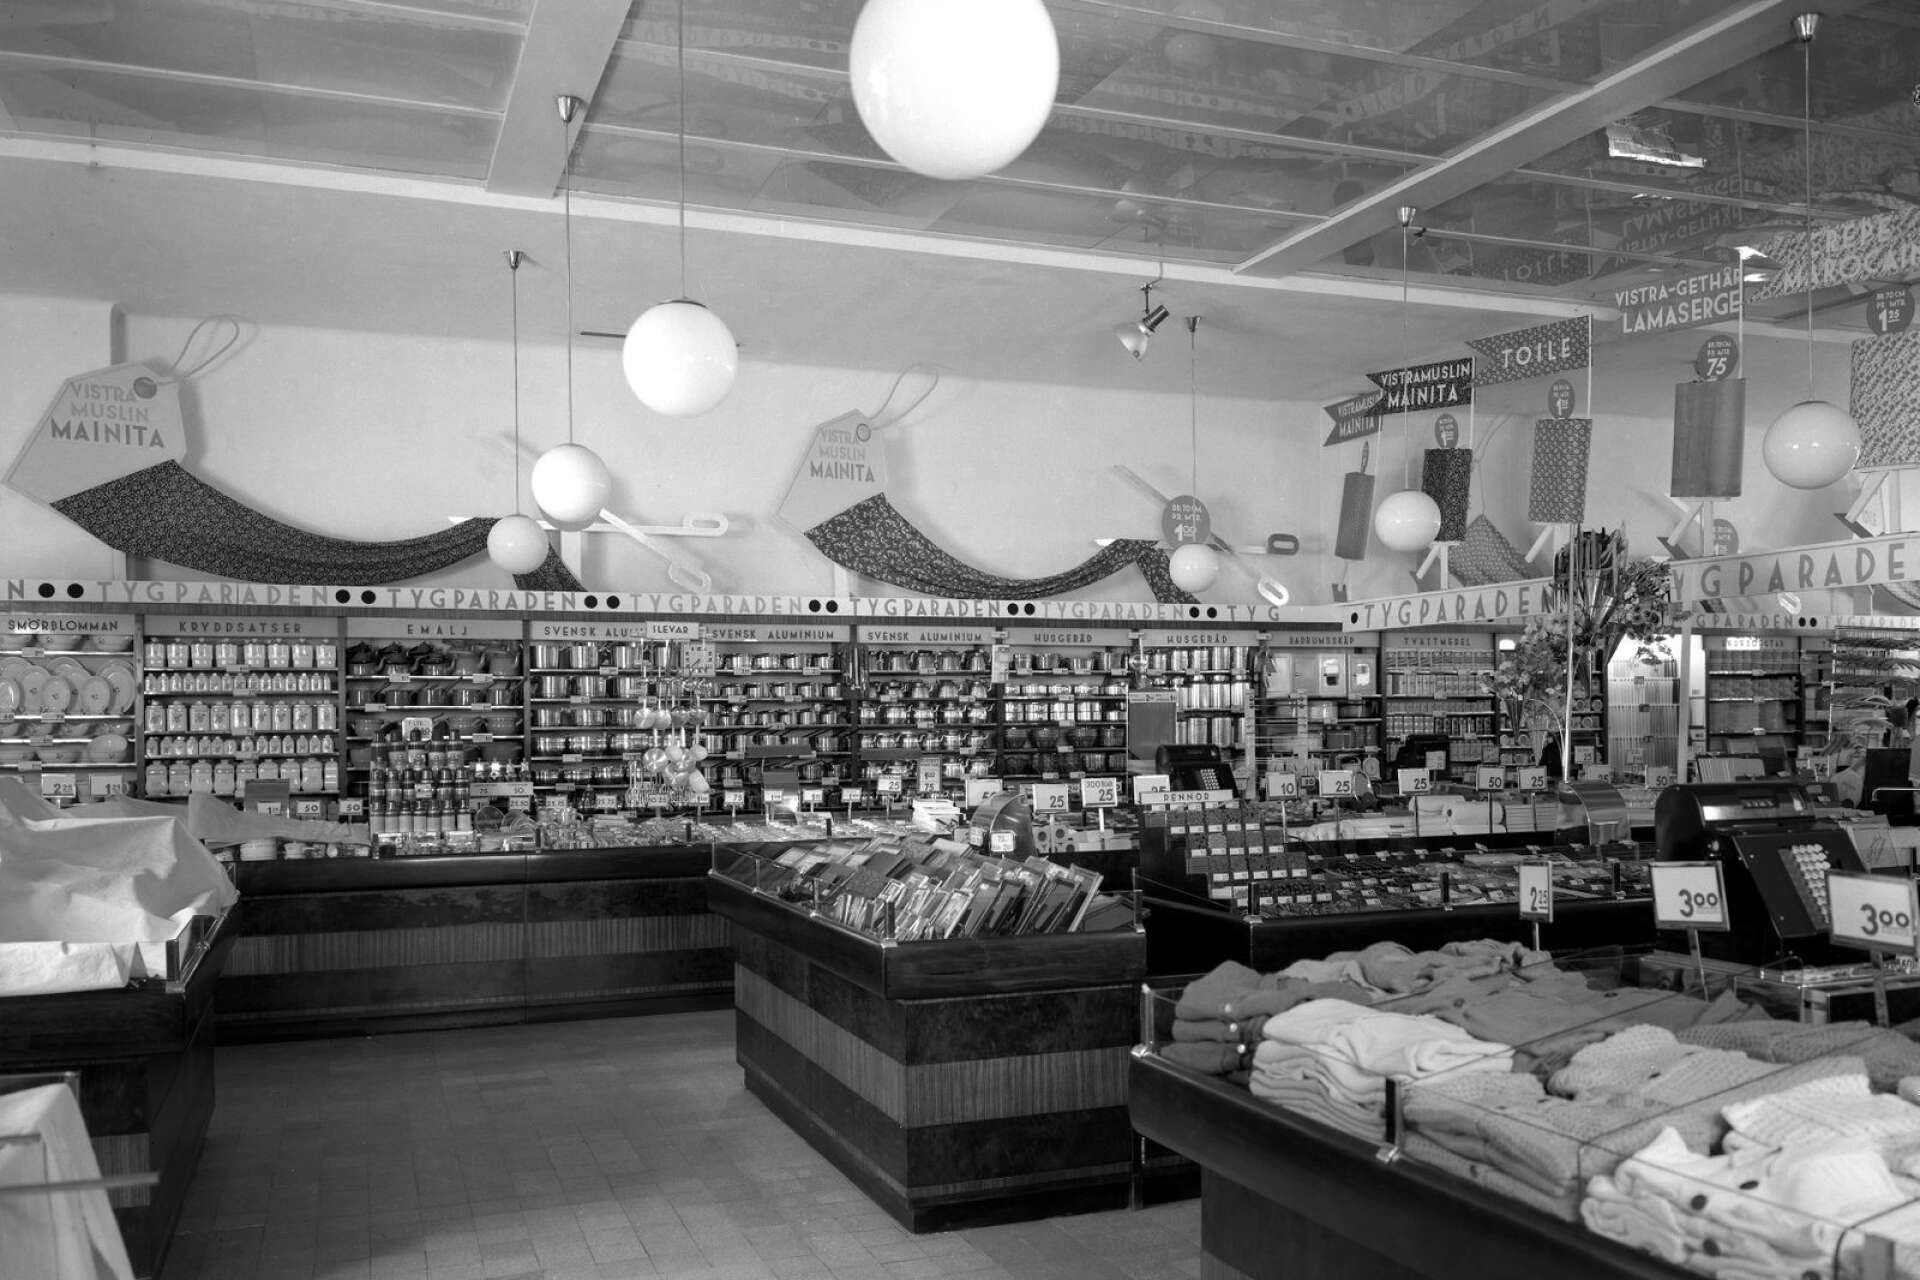 Stort utbud av tyger hos varuhuset Epa på Tingvallagatan 19. Bilden är tagen 1940. 